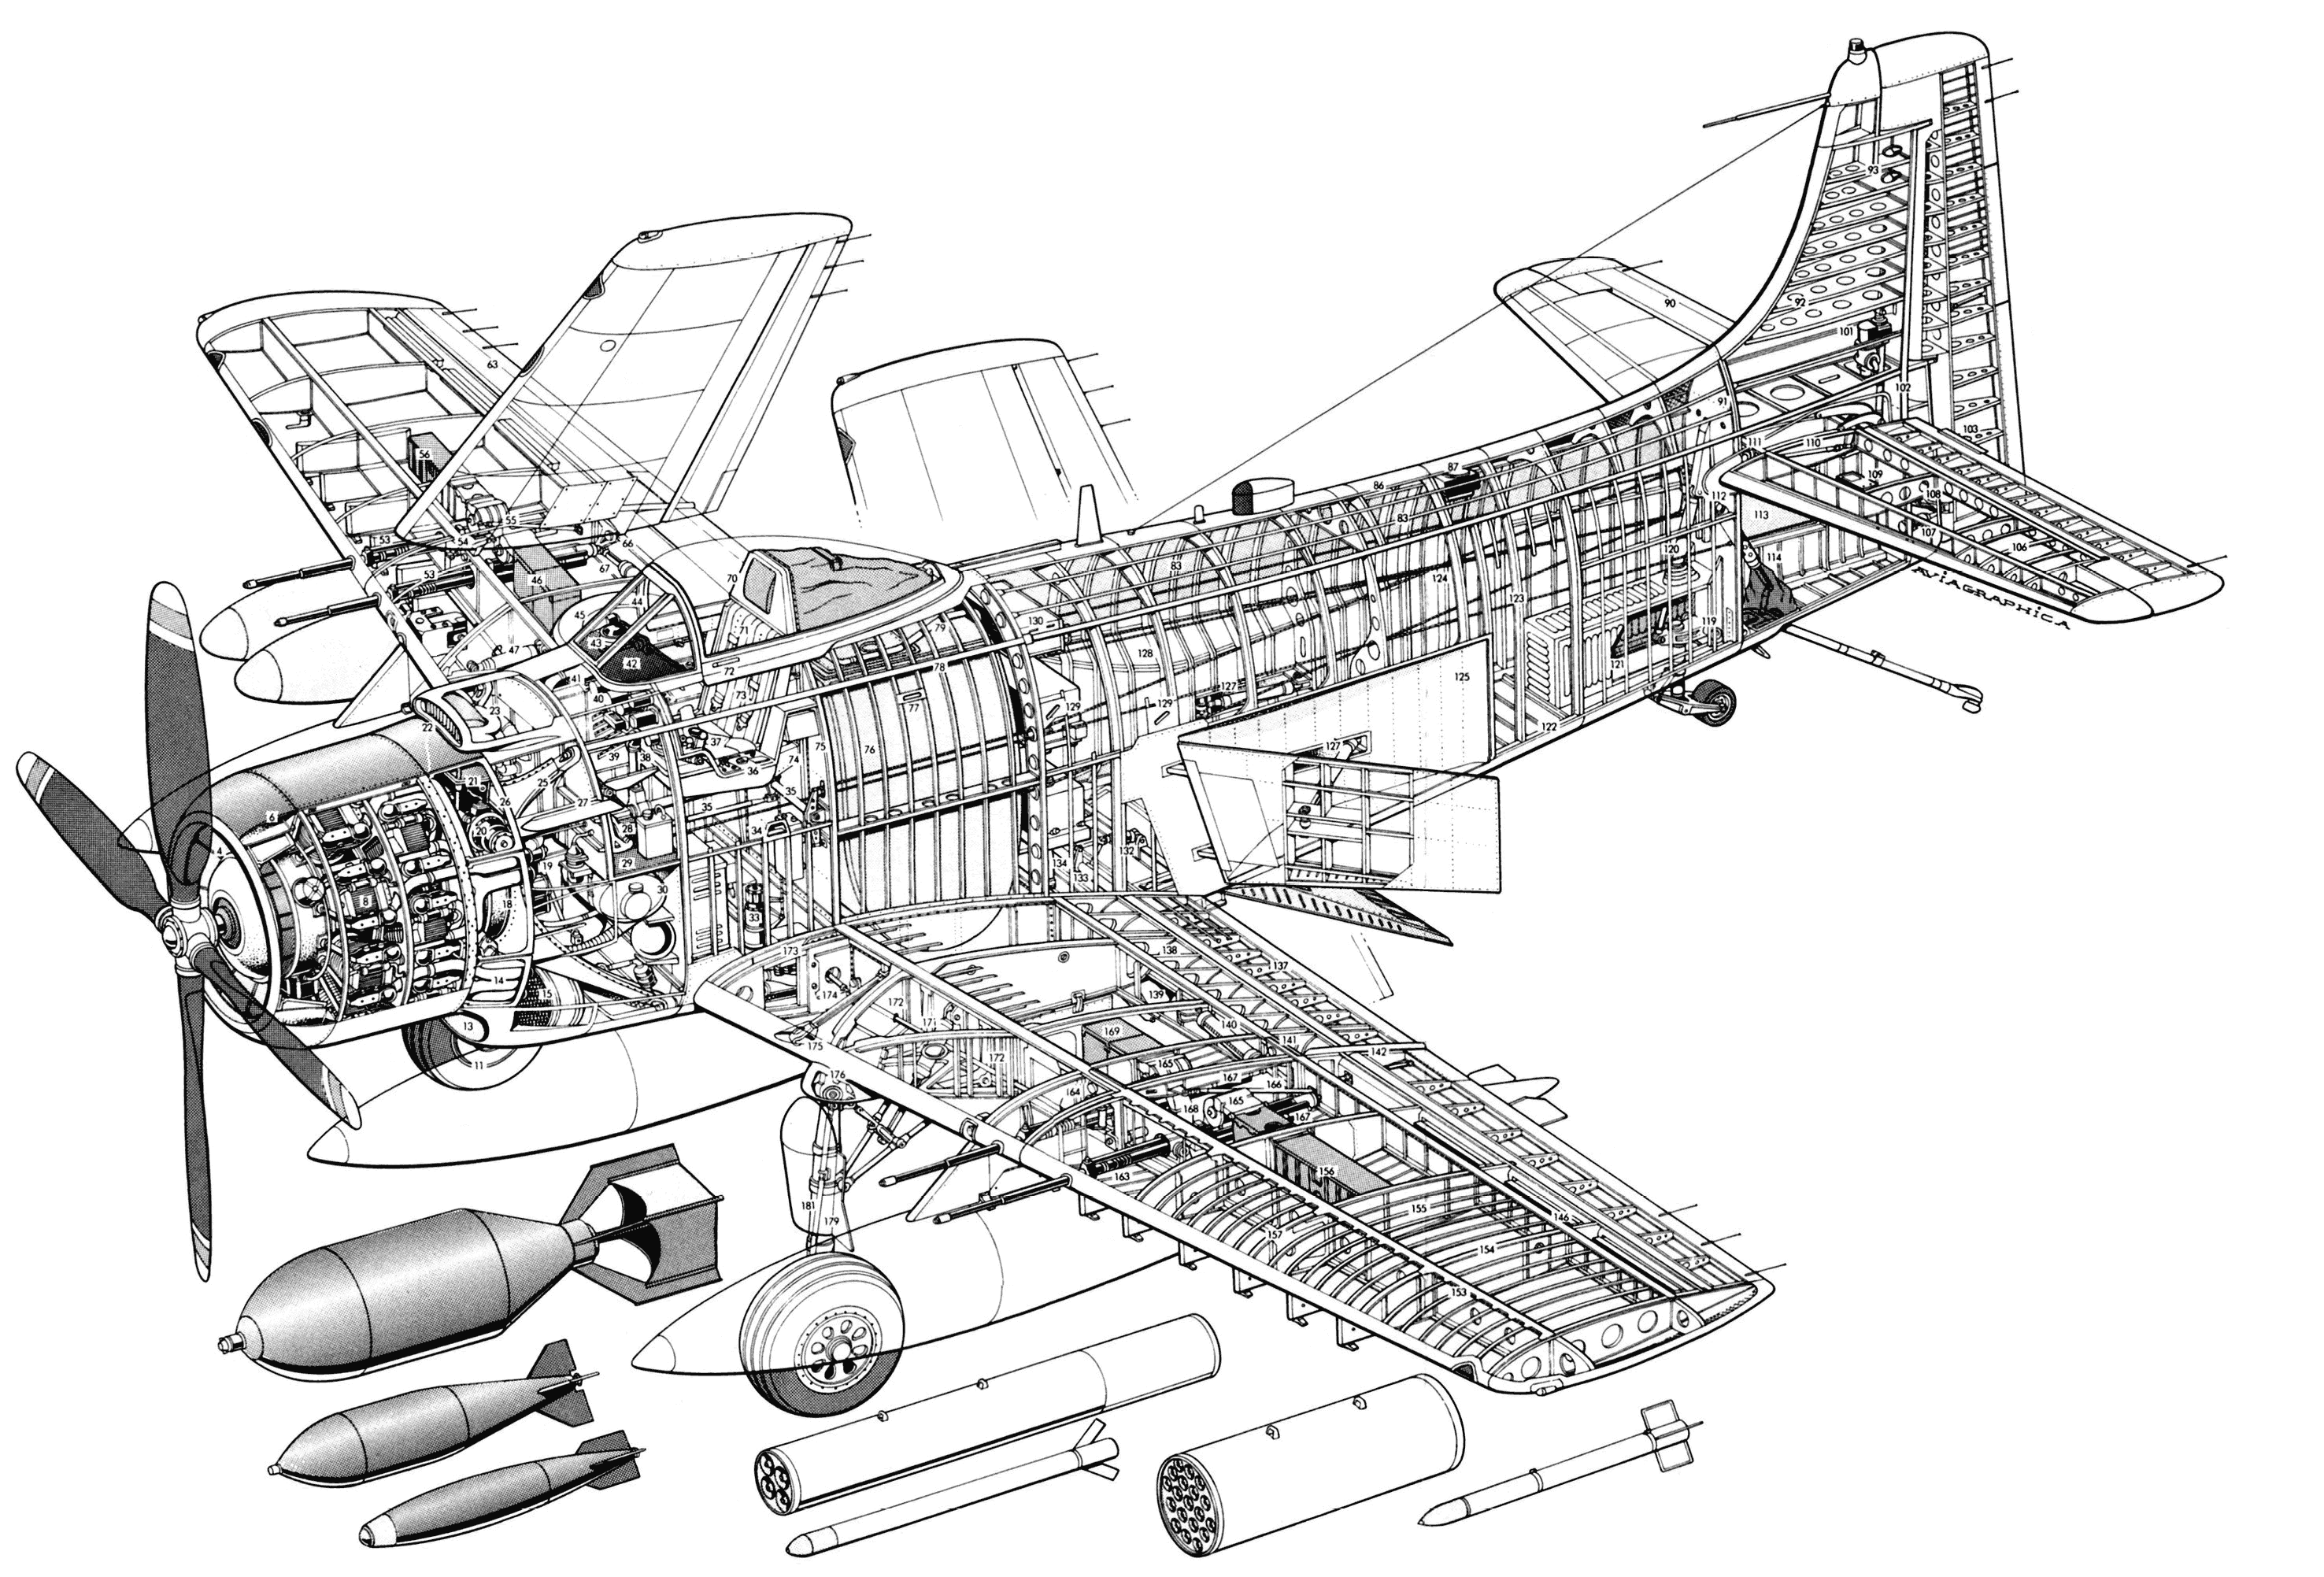 Douglas A-1 Skyraider cutaway